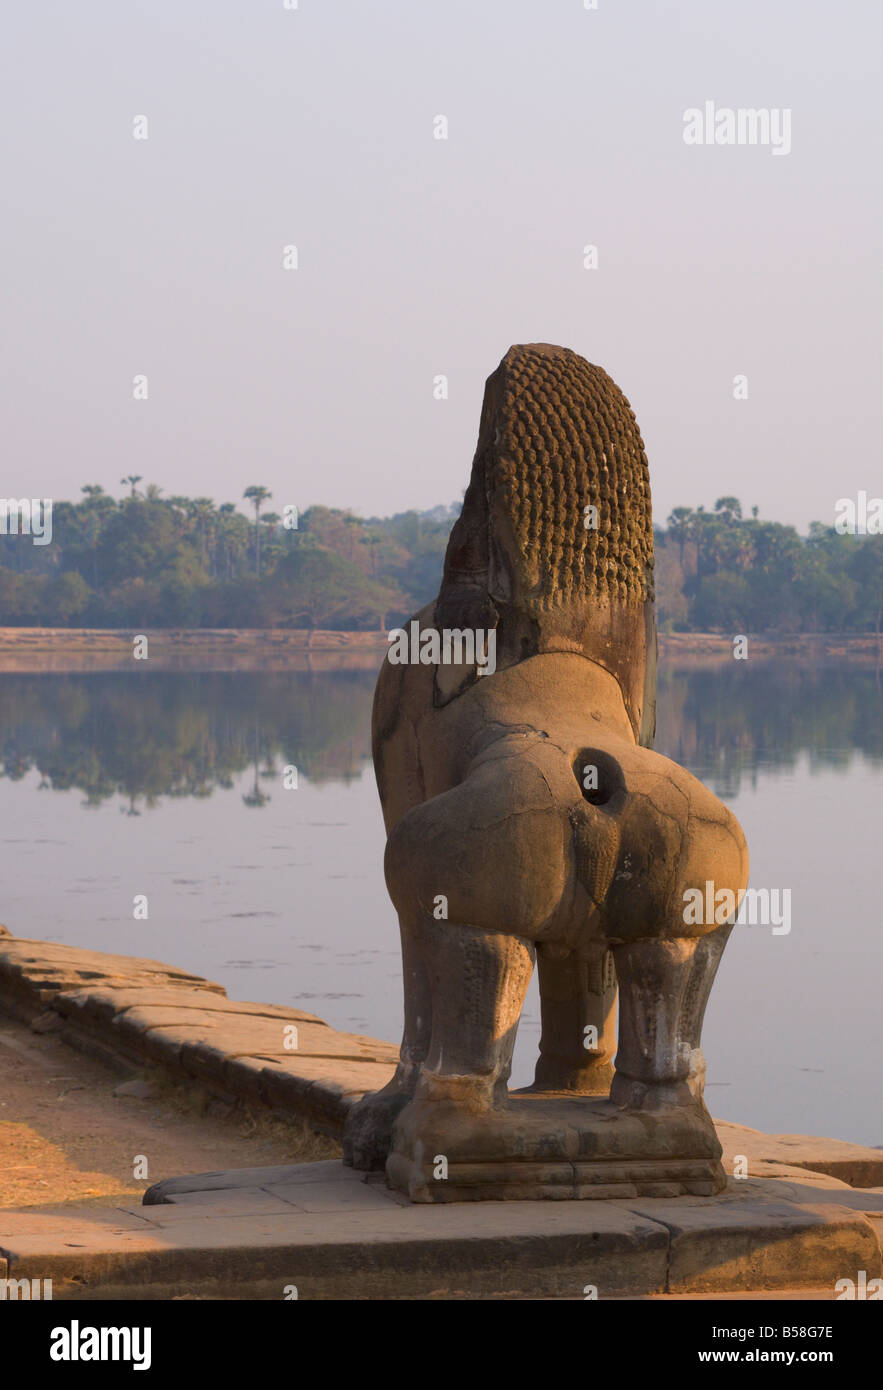 Statua di Lion, Angkor Wat, Angkor, Sito Patrimonio Mondiale dell'UNESCO, Siem Reap, Cambogia, Indocina, sud-est asiatico Foto Stock